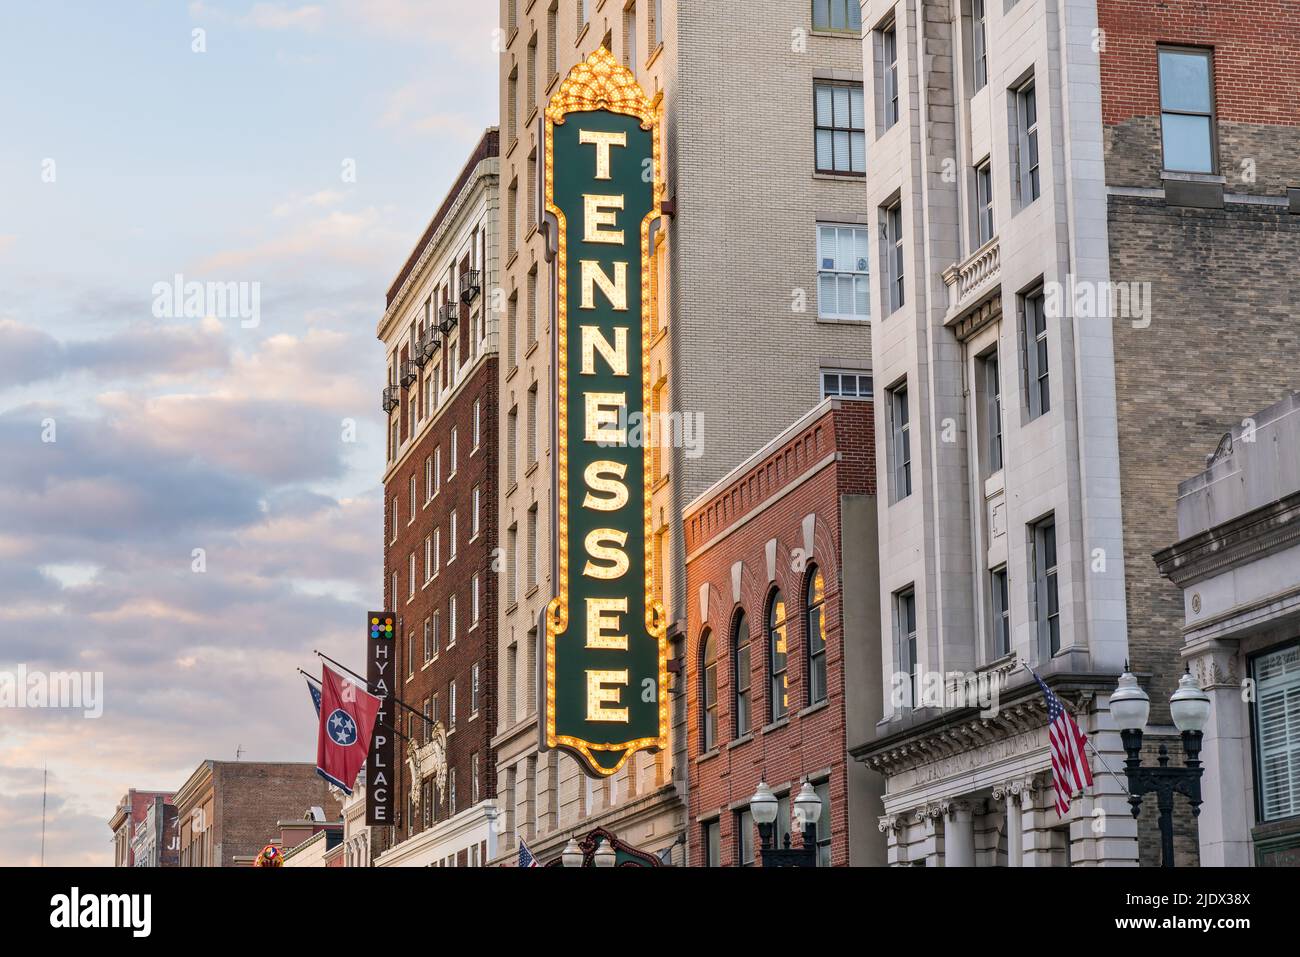 Knoxville, TN - 9 de octubre de 2019: El histórico Tennessee Theatre en el centro de Knoxville, Tennesseee fue construido en octubre de 1928 Foto de stock